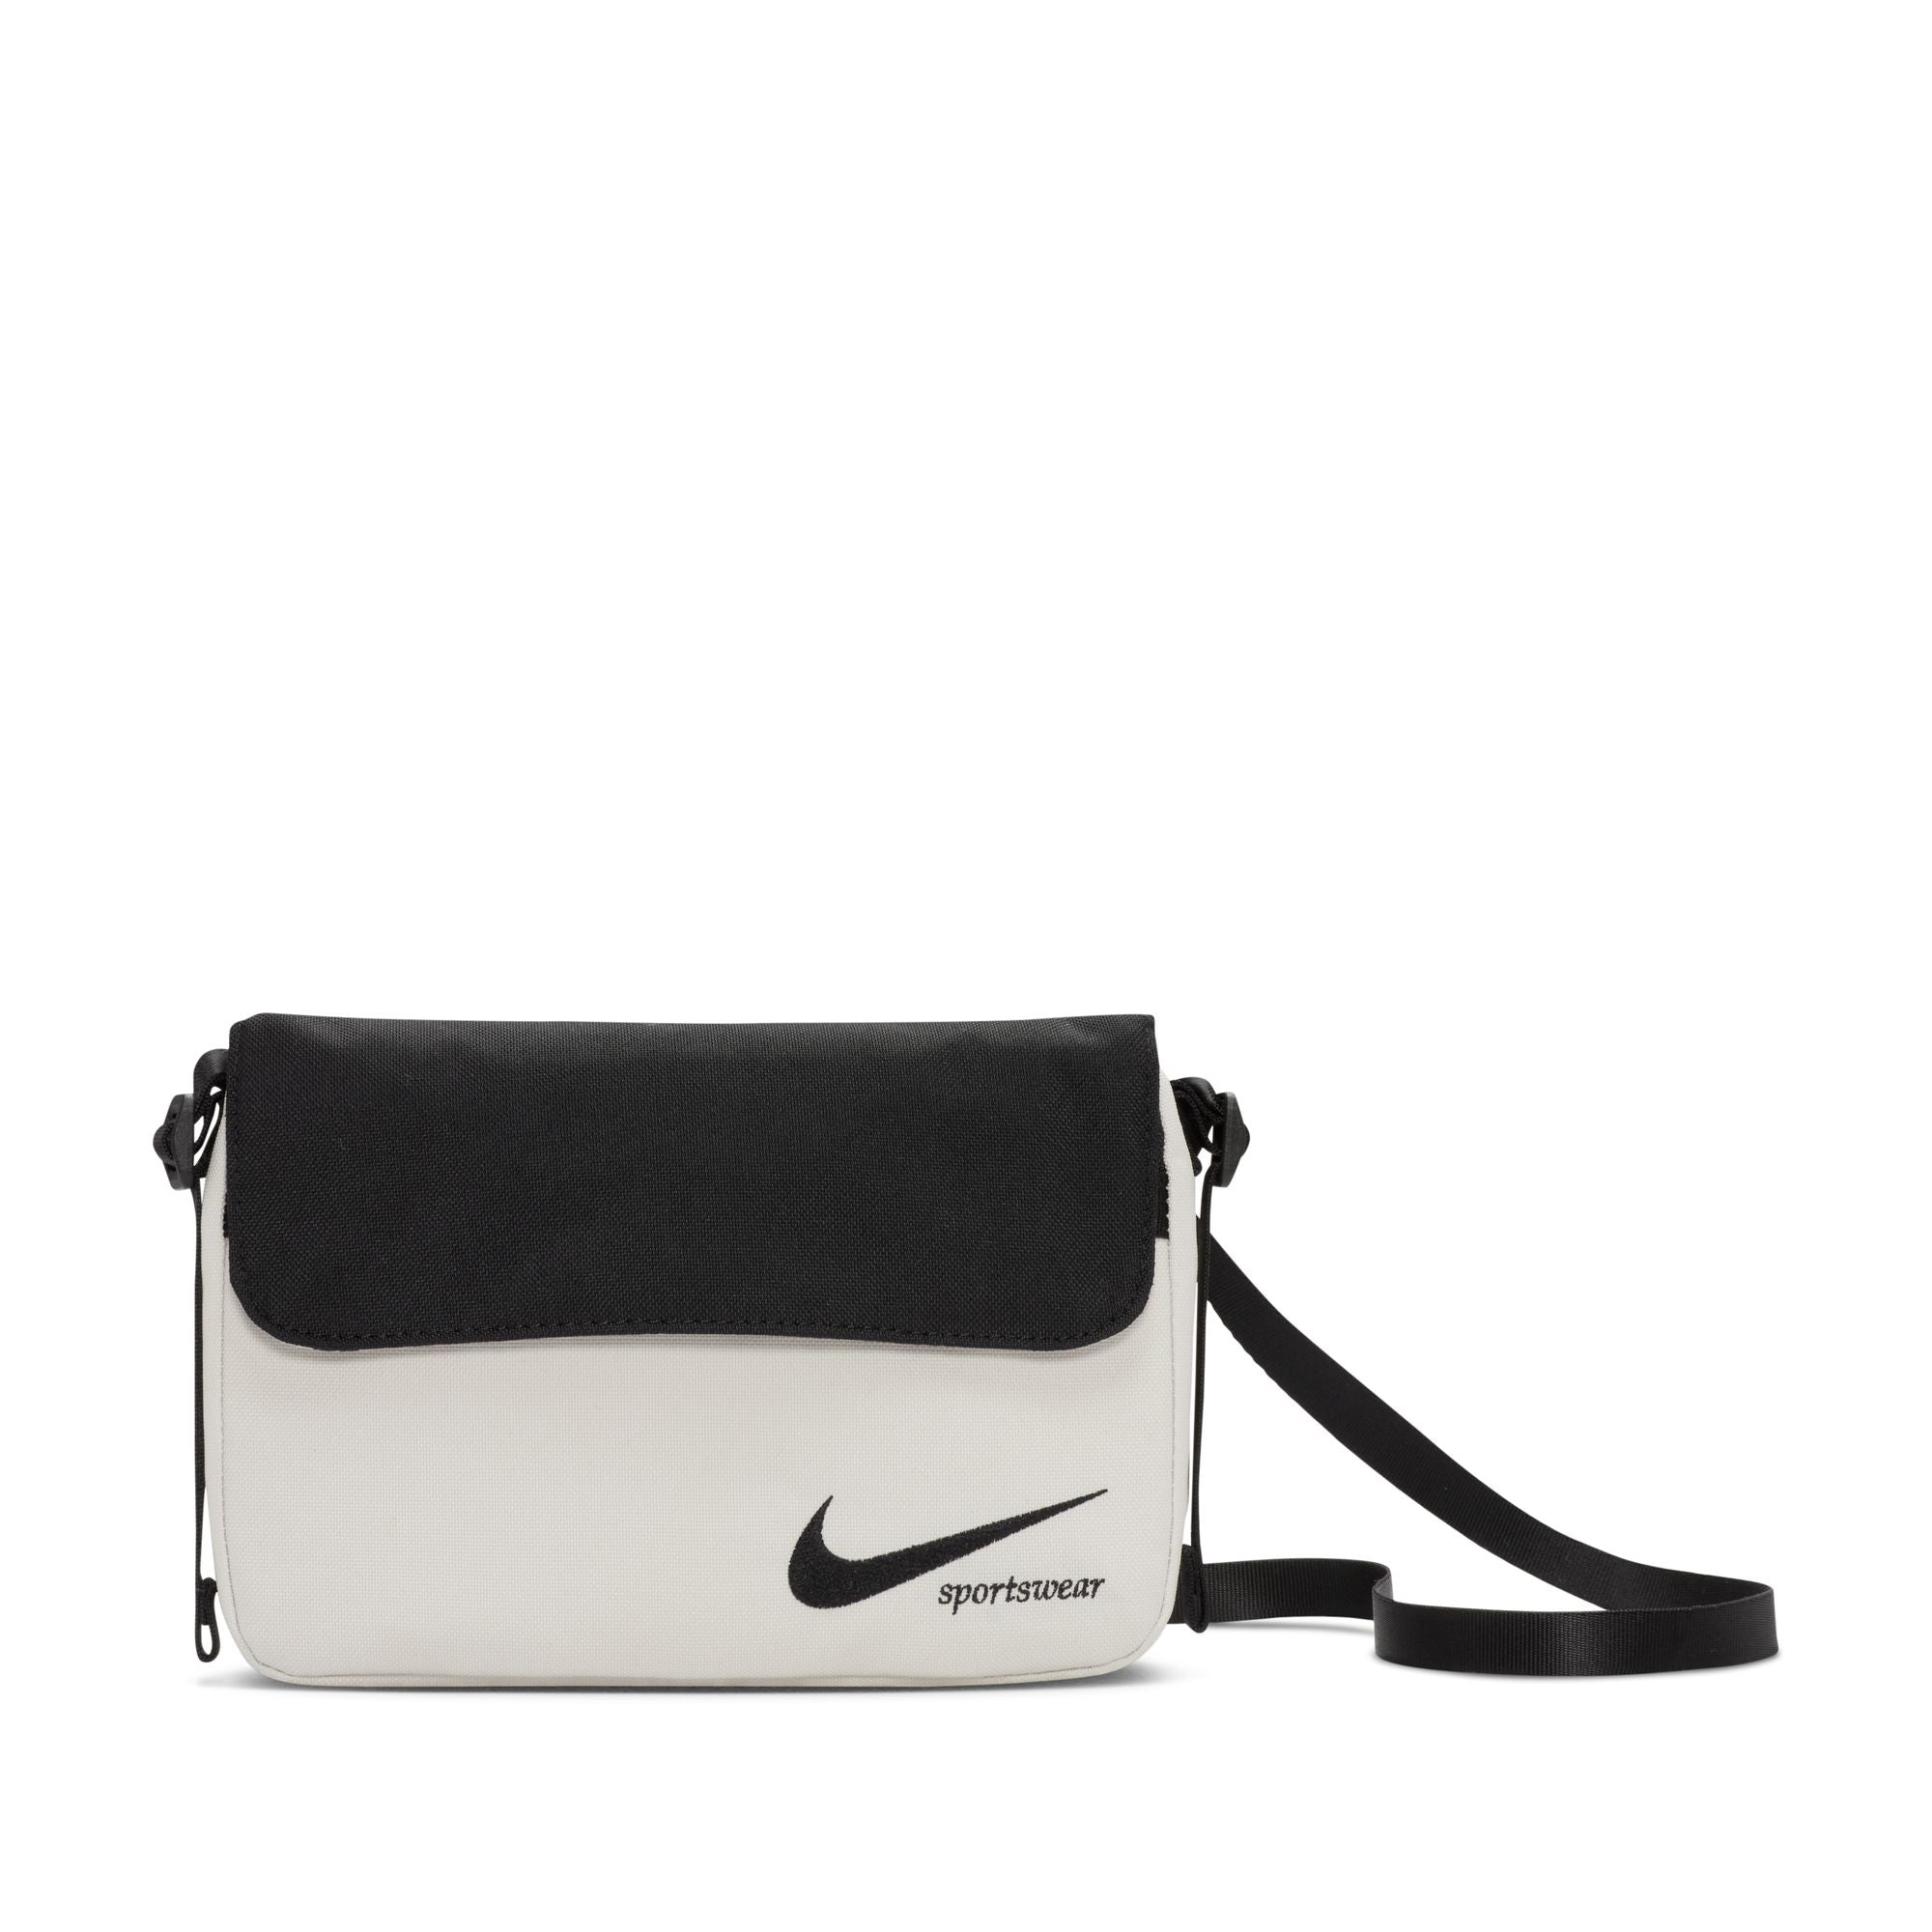 Nike Futura 365 Crossbody Bag